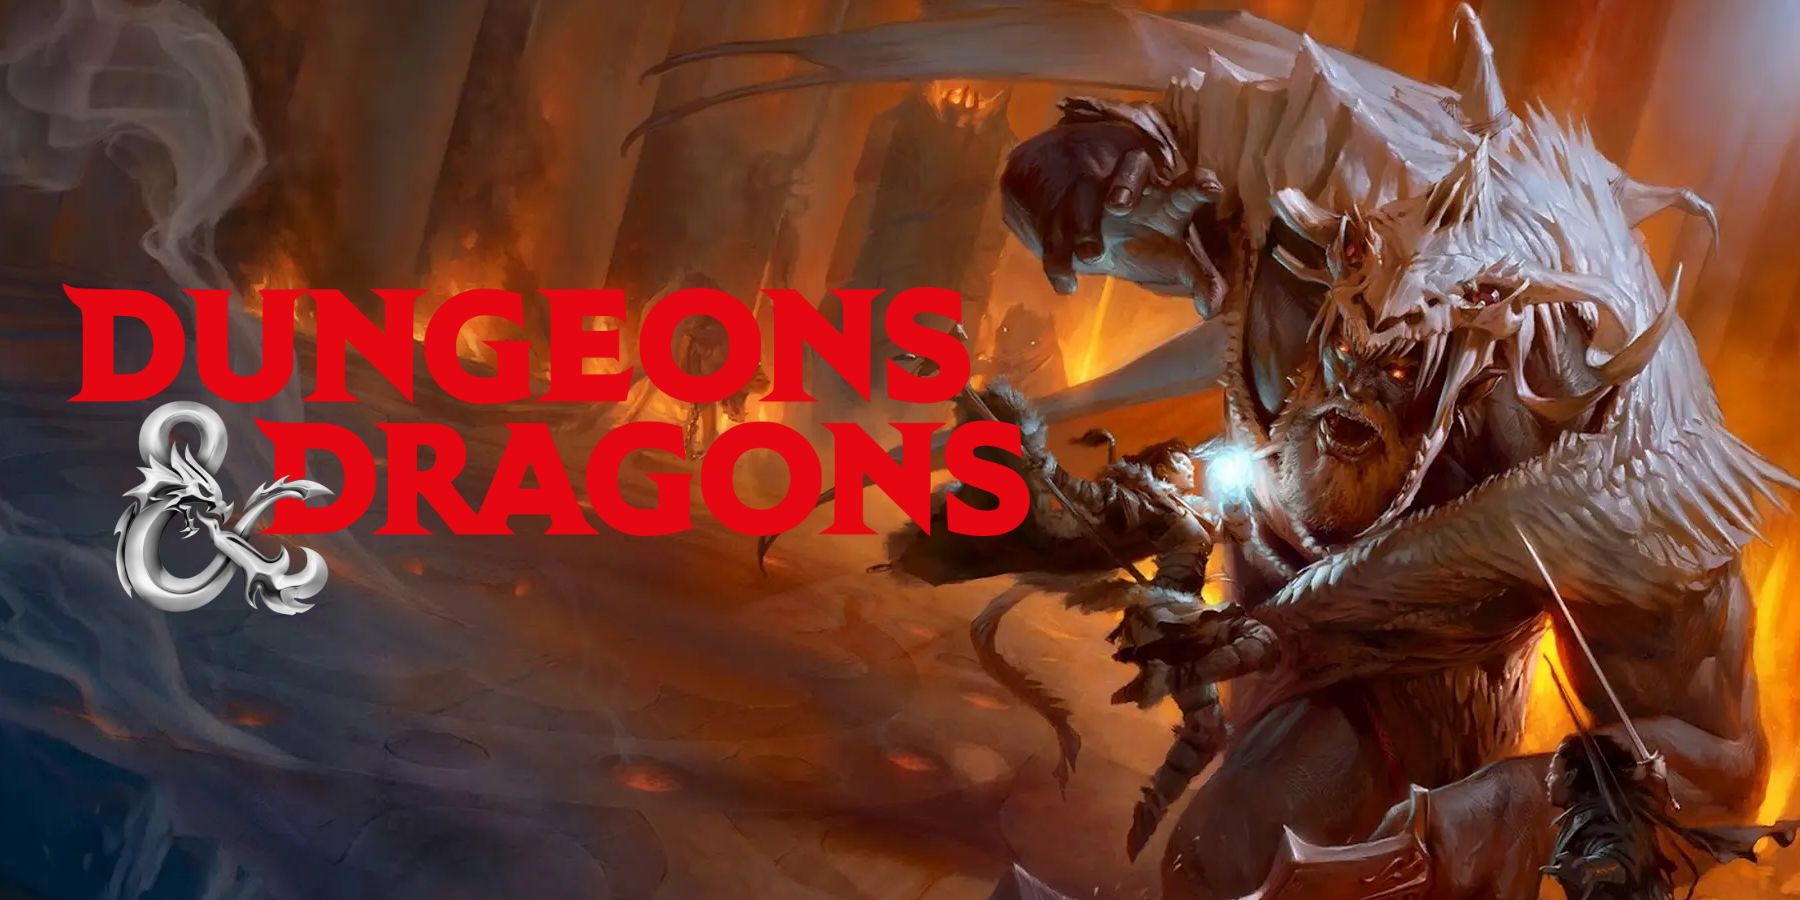 Dungeons and Dragons ottengono una nuova versione in tre anni